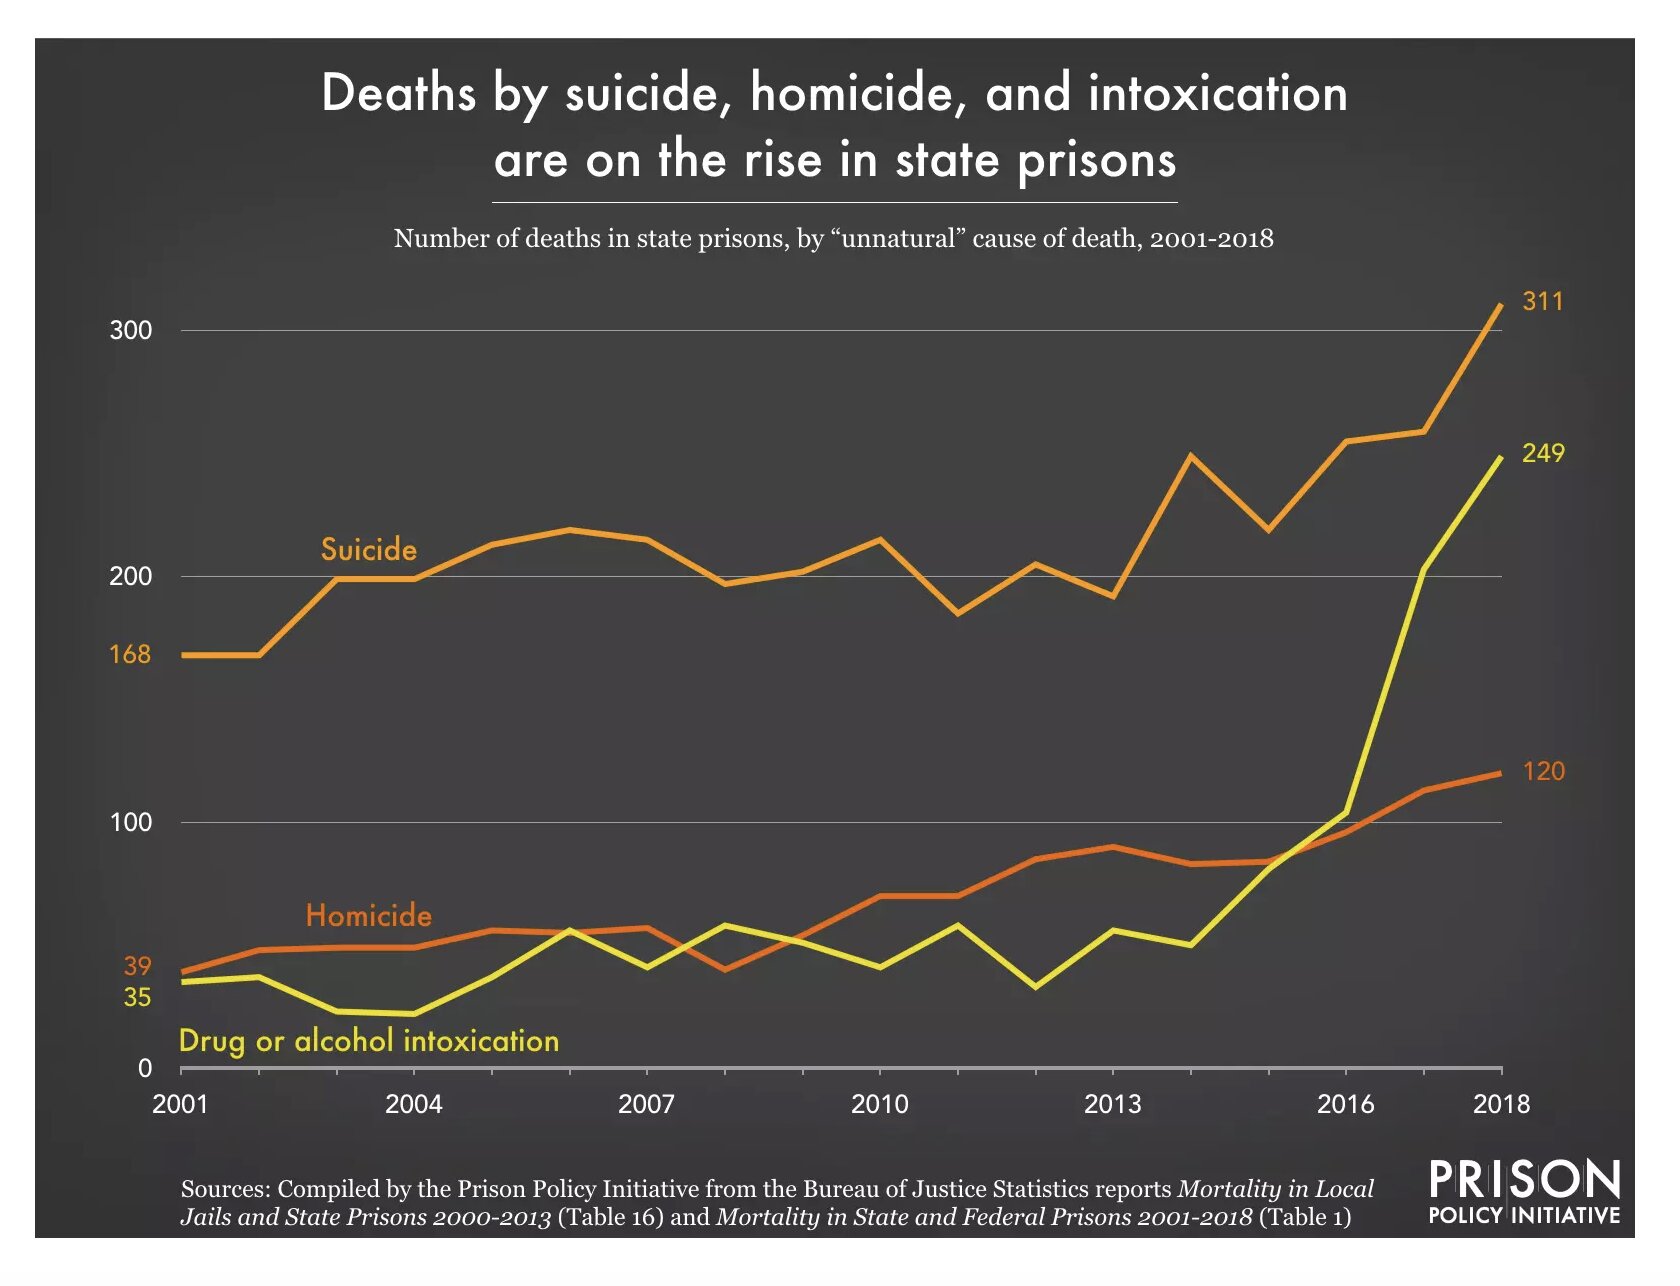 アメリカの州刑務所では、自殺、他殺、ドラッグやアルコール中毒による死者が増加している。出典：PRISON POLICT INITIATIVE